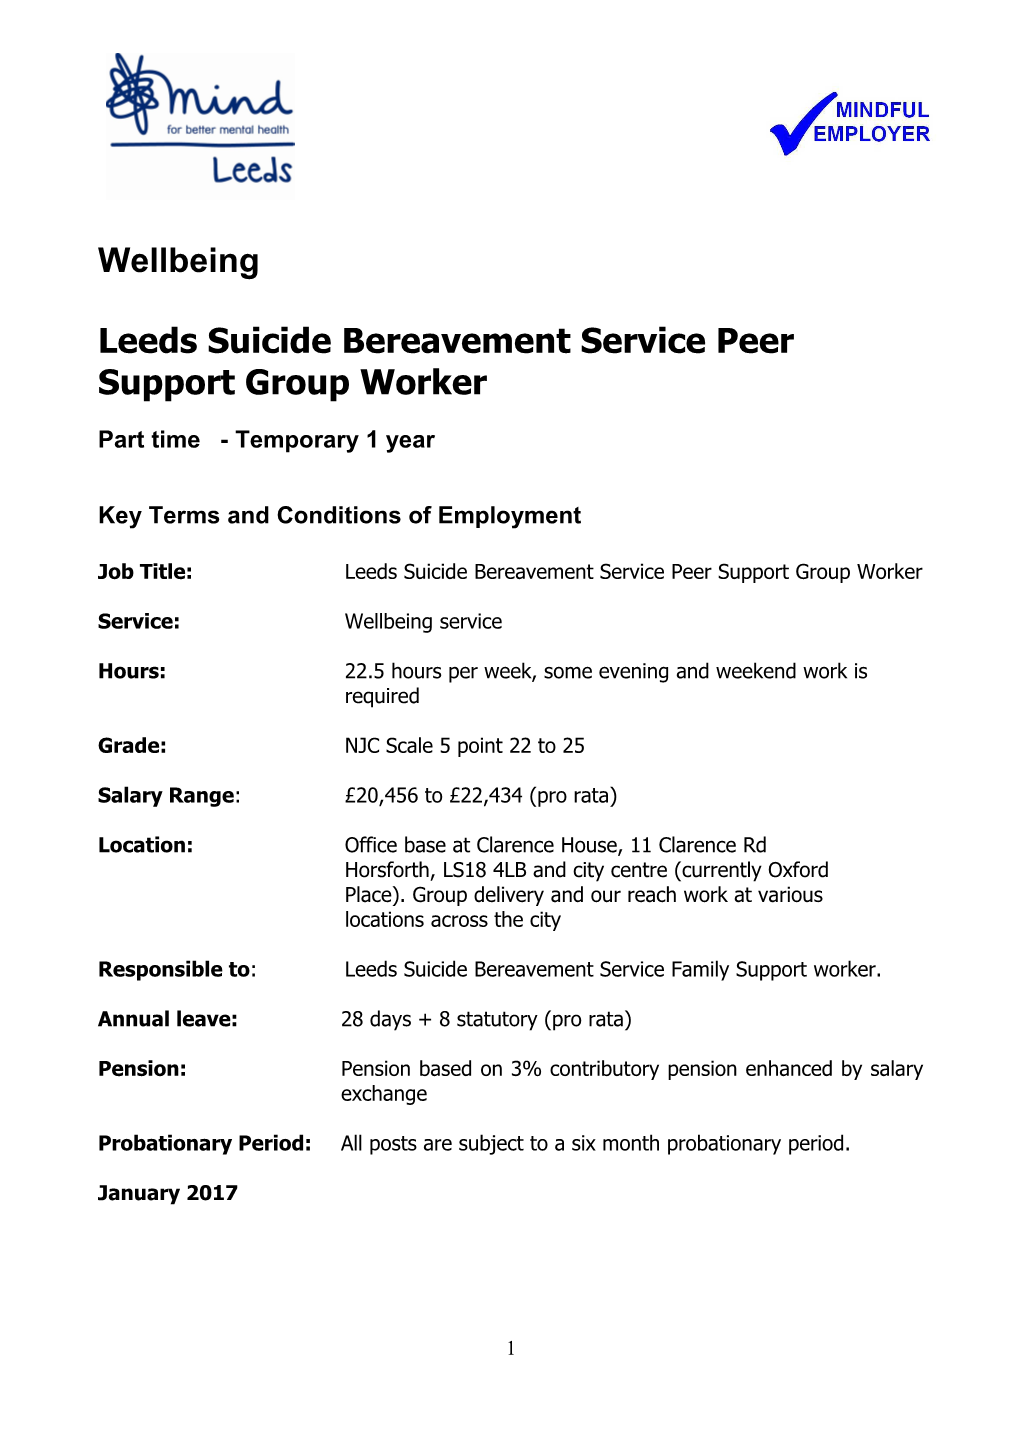 Leeds Suicide Bereavement Service Peer Support Group Worker